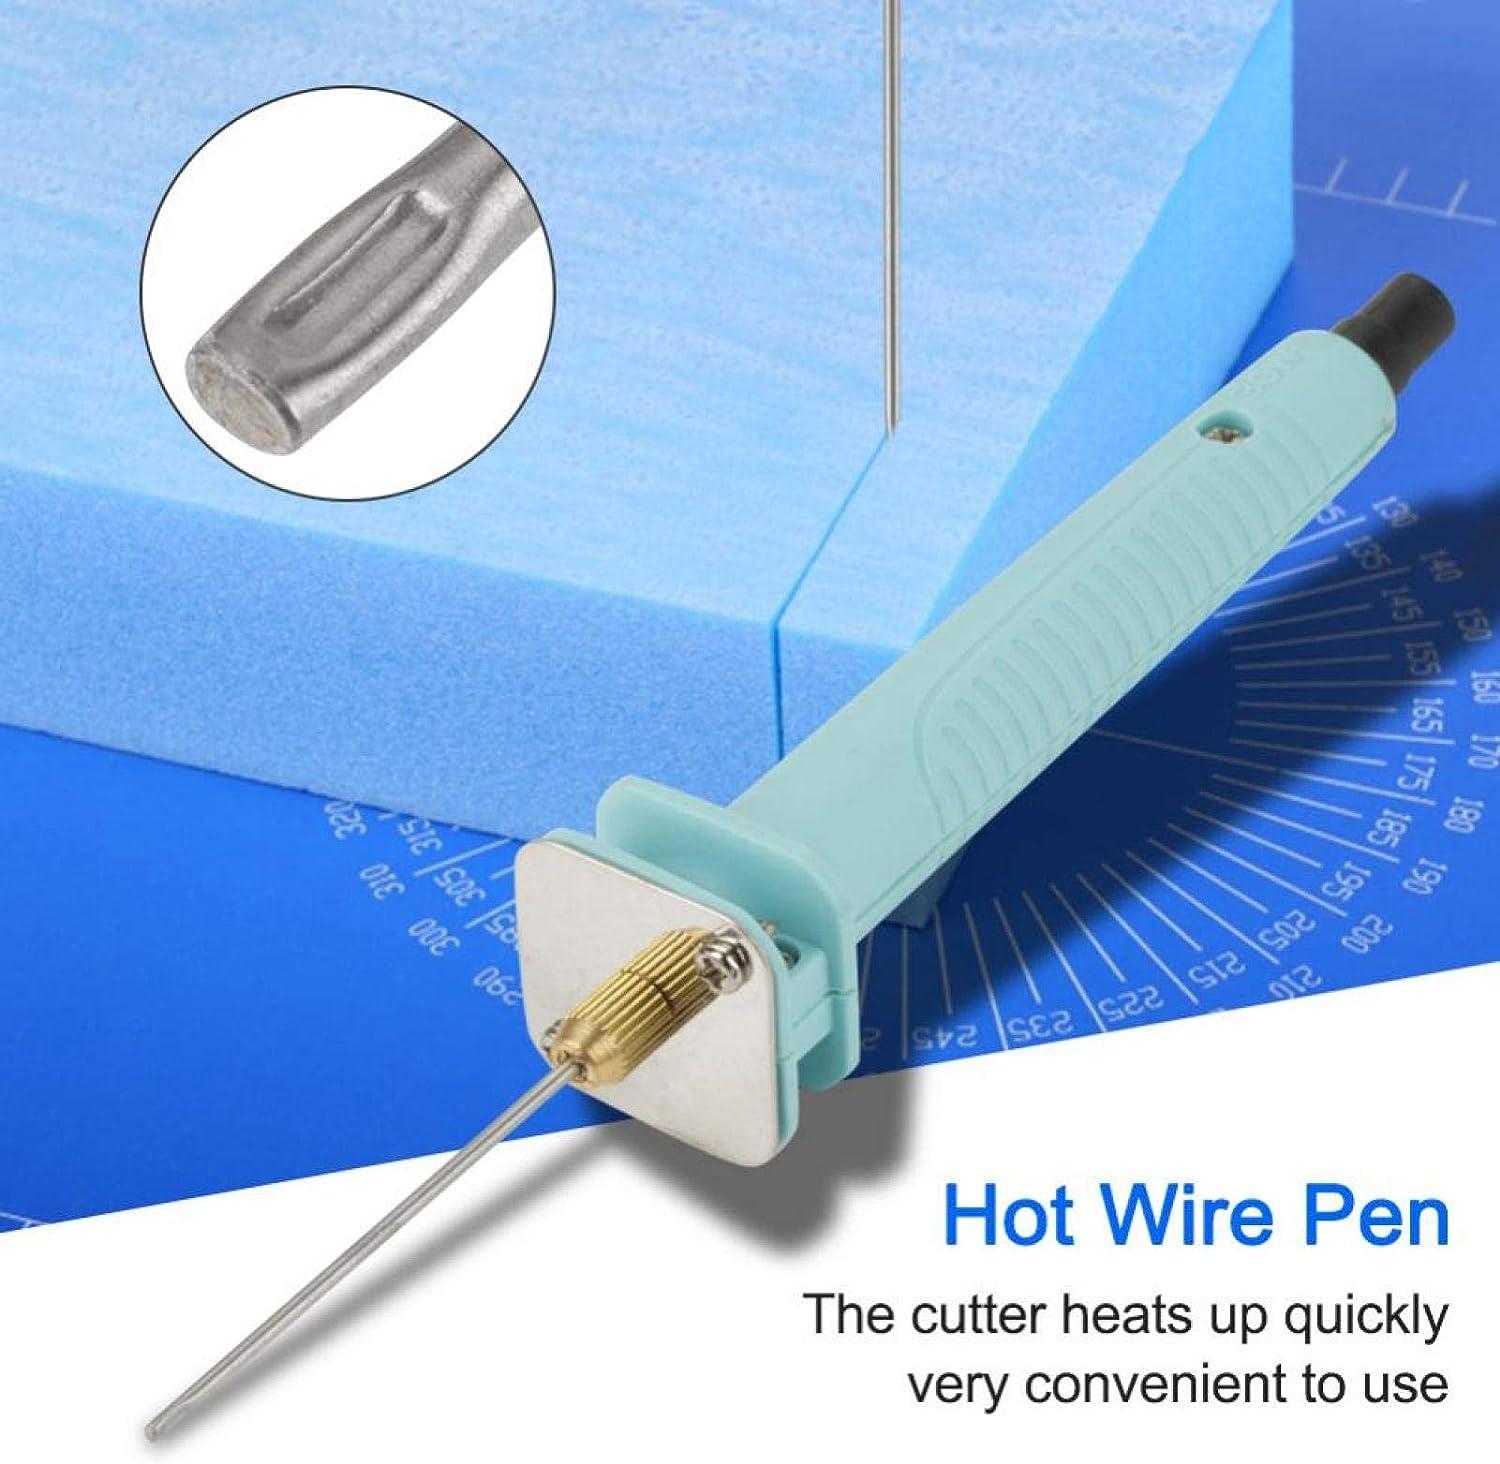 Electric Foam Cutter Styrofoam Cutting Machine Hot Knife Pen Tools